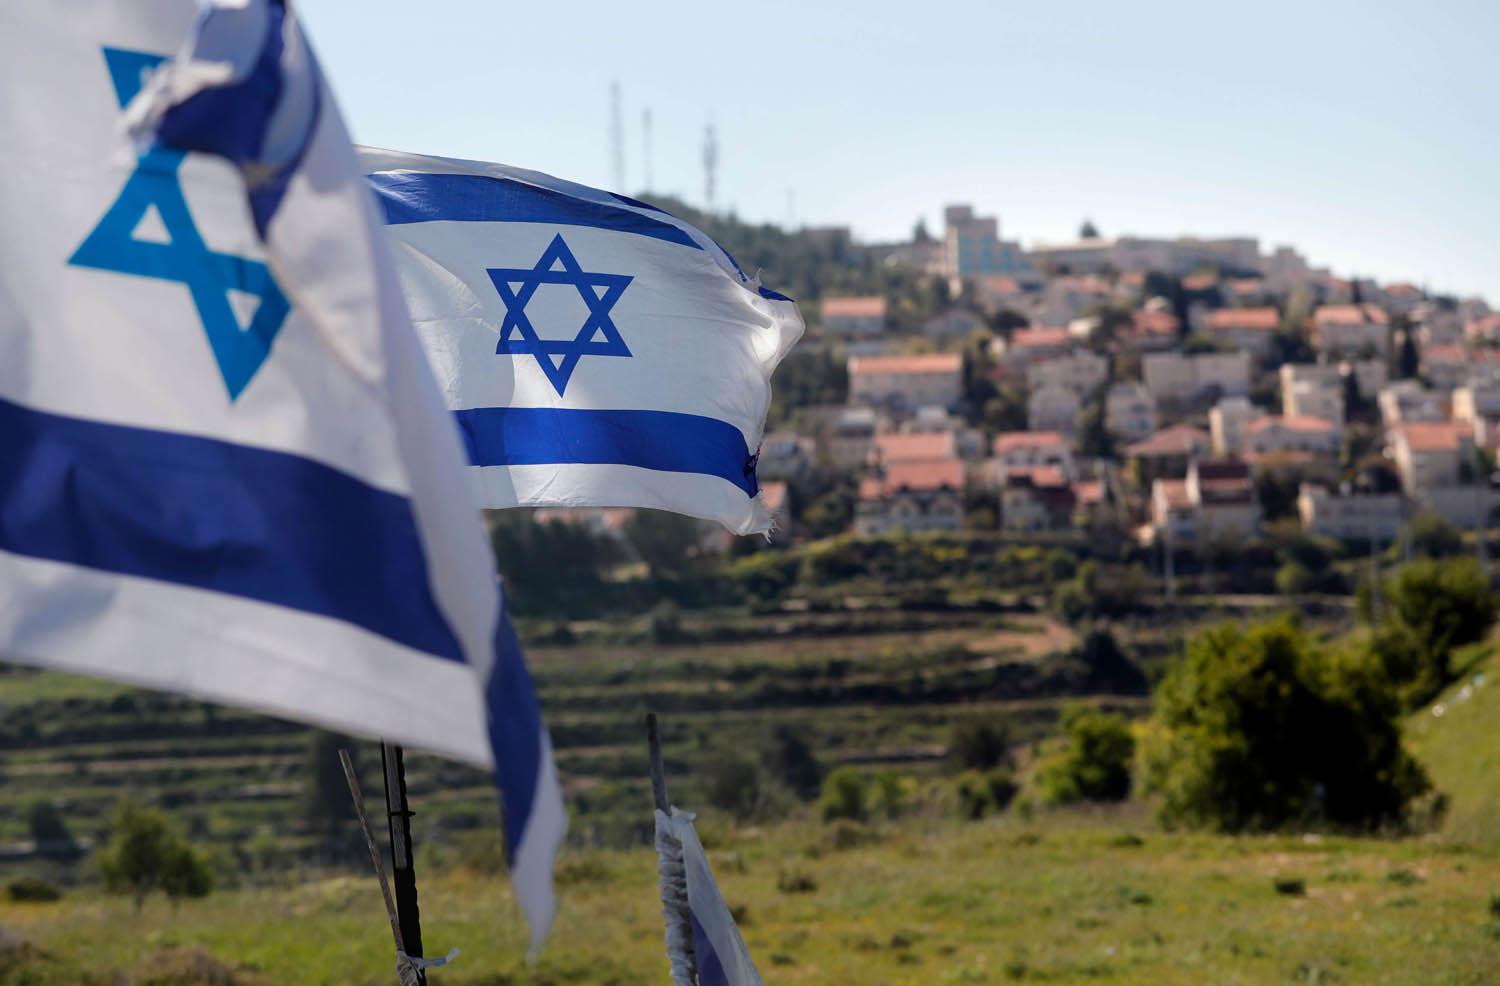 أعلام إسرائيلية على مستوطنة عفرات على حافة بيت لحم في الضفة الغربية